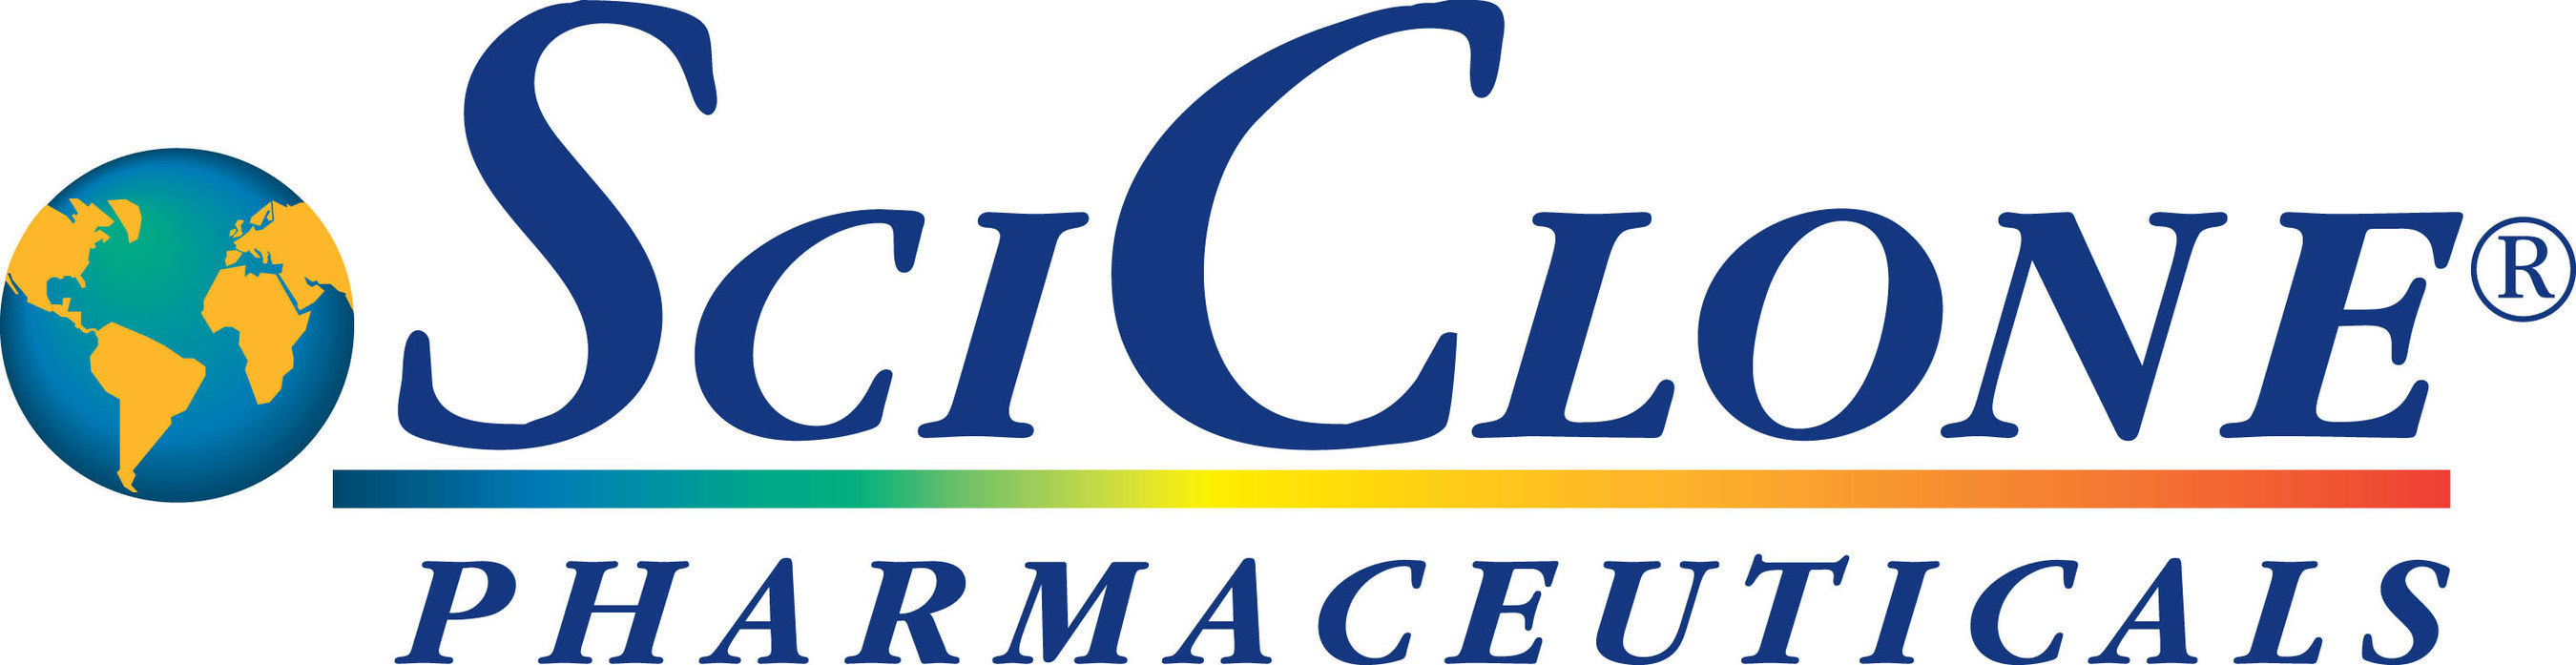 SciClone Pharmaceuticals, Inc. Logo.